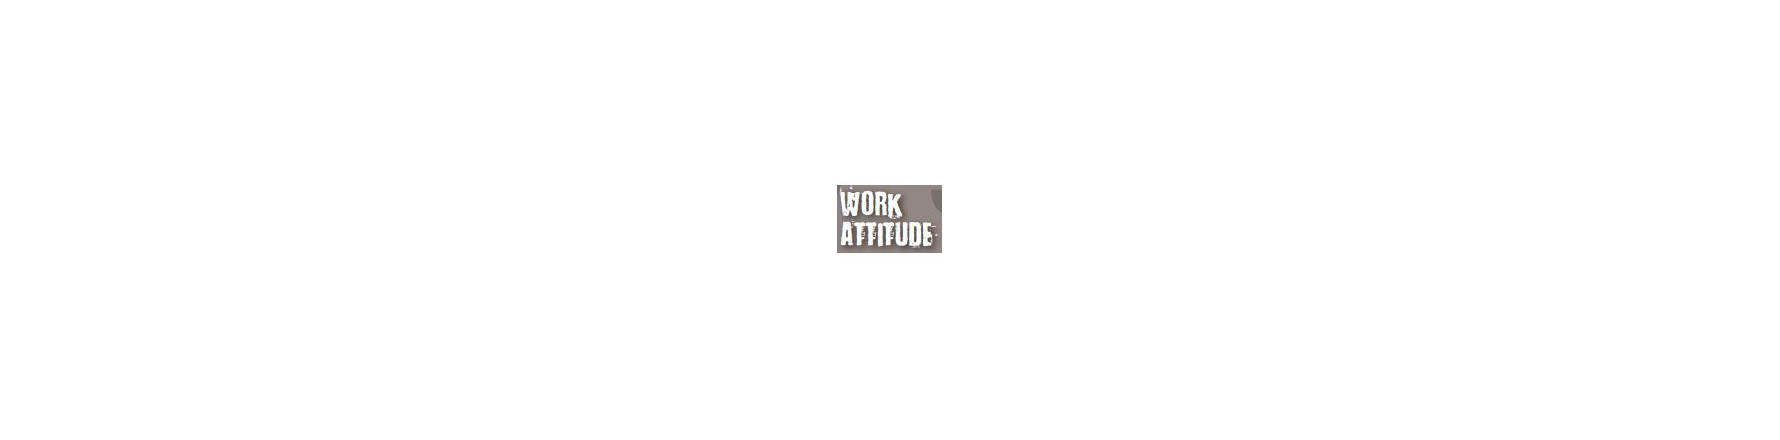 Work Attitude - Vêtements BTP - Vêtements Travaux Publics